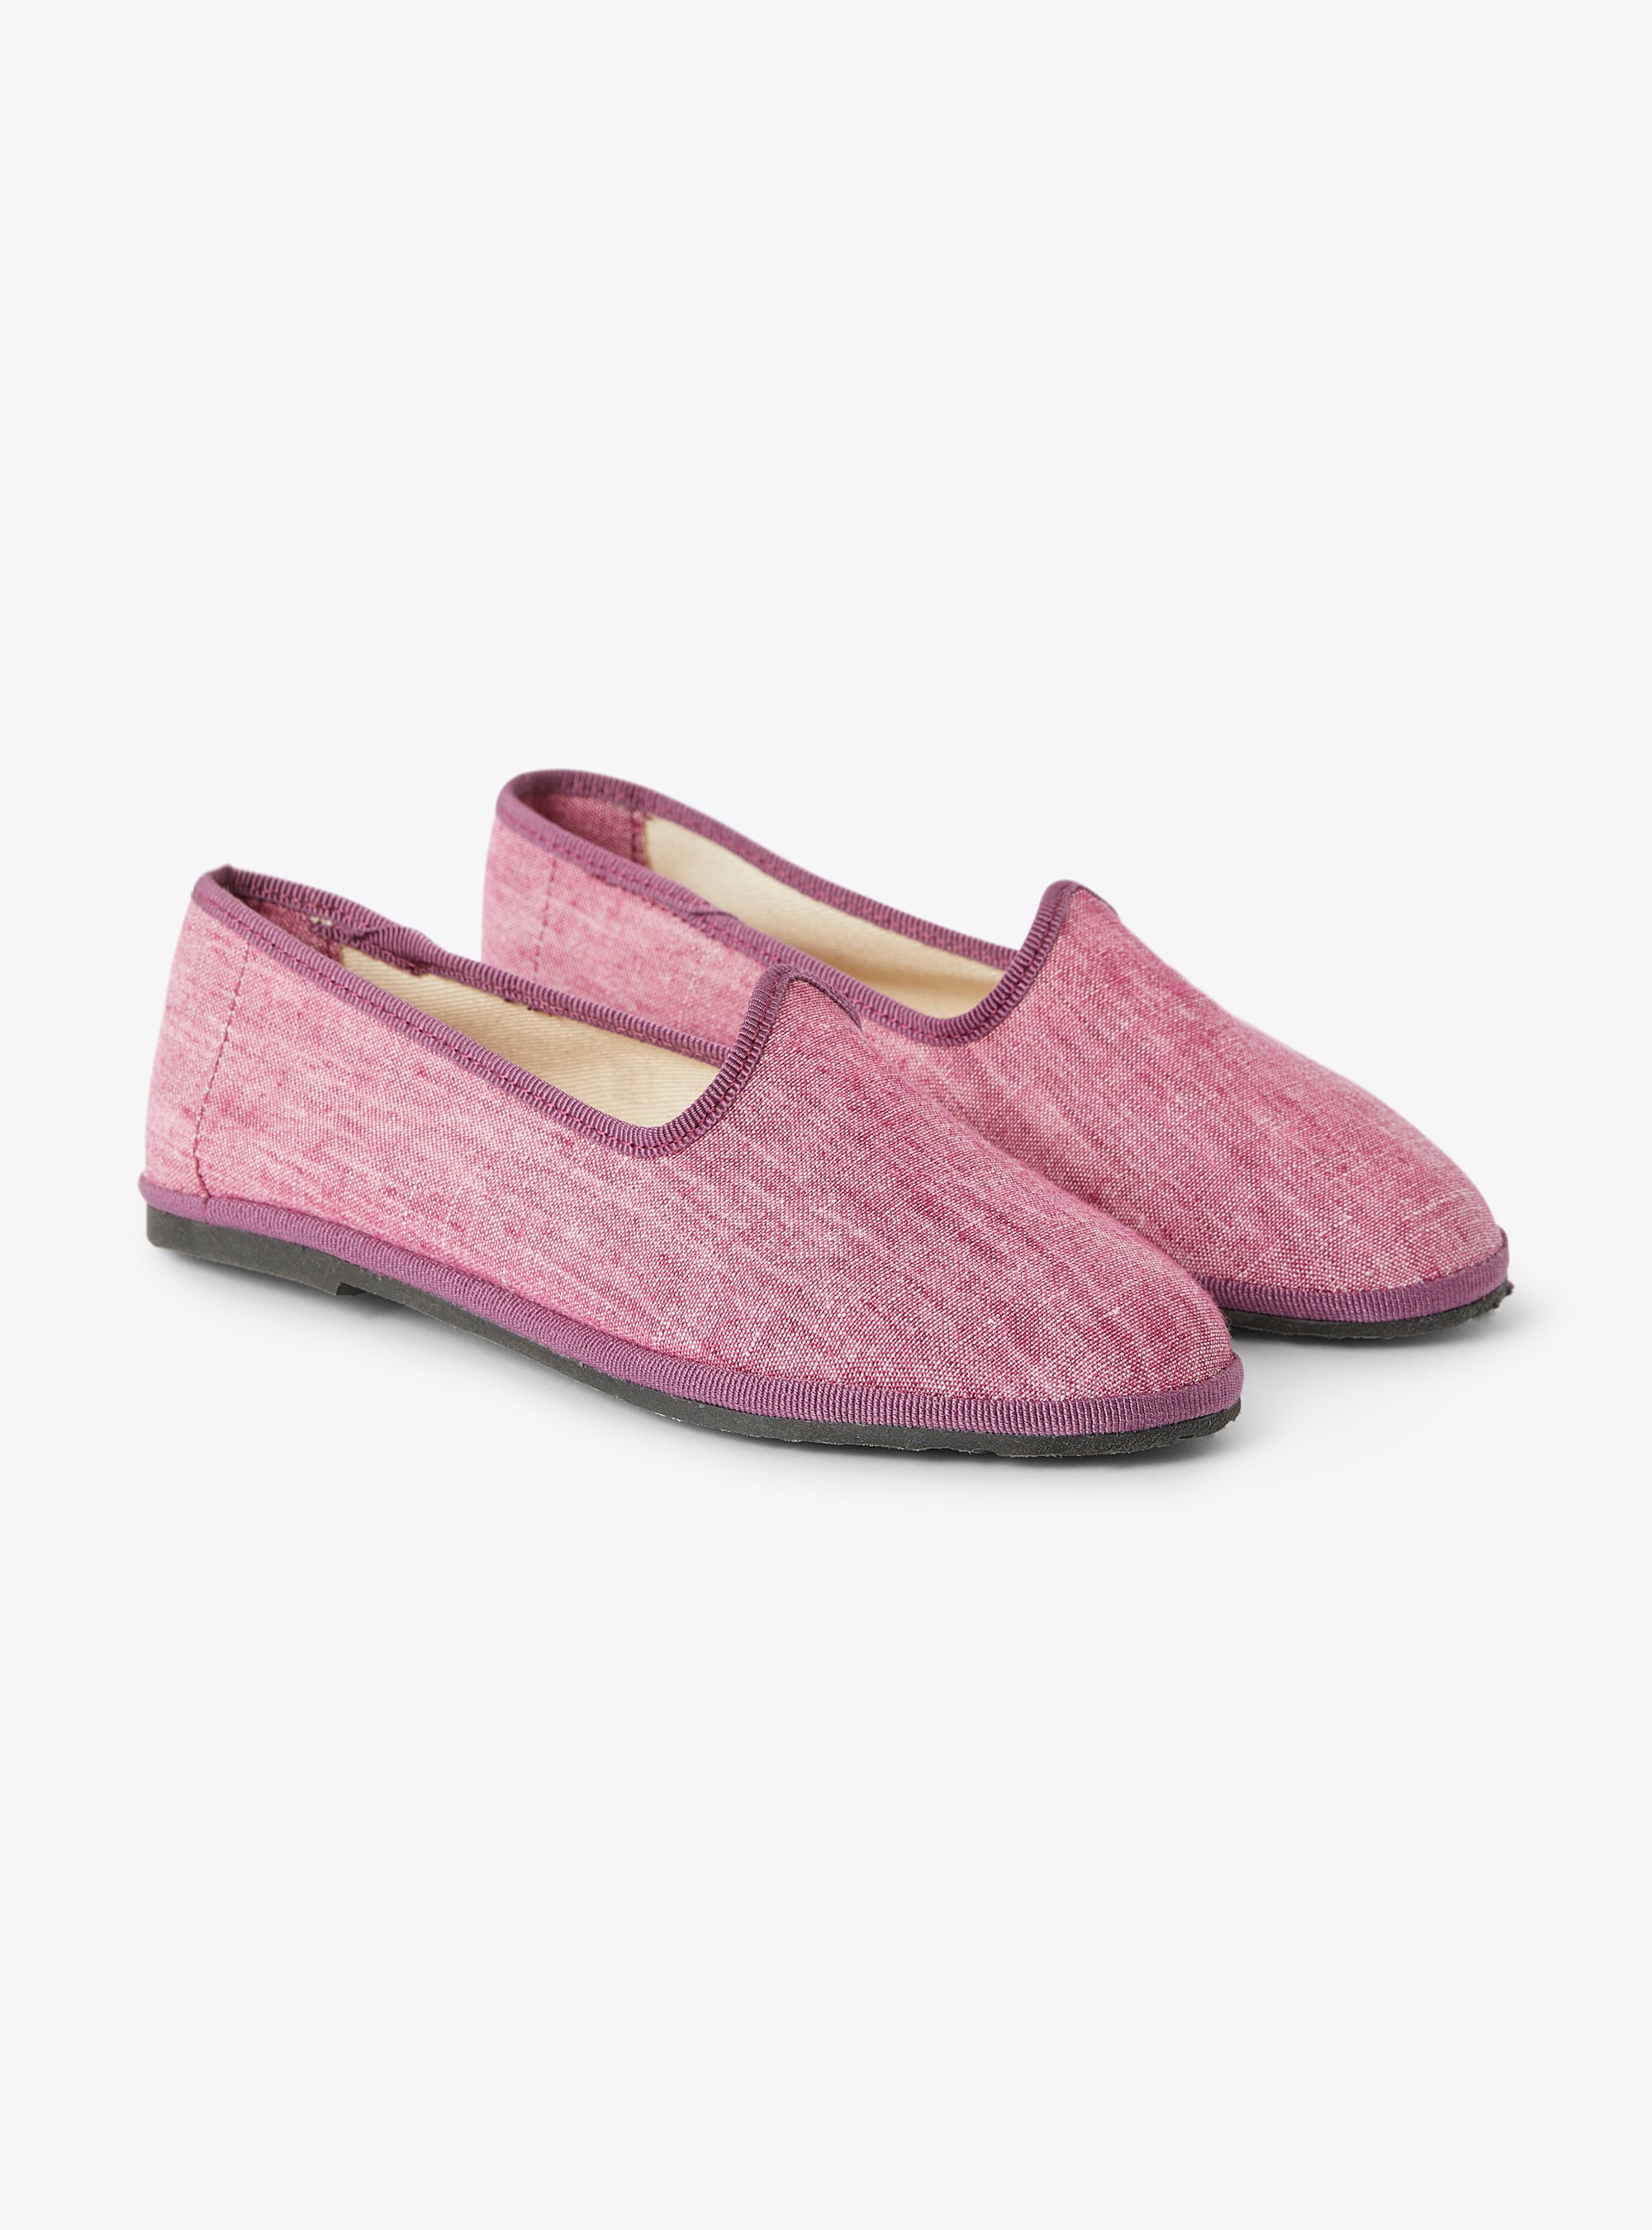 Slippers en lin chiné violet oignon rouge - Chaussures - Il Gufo